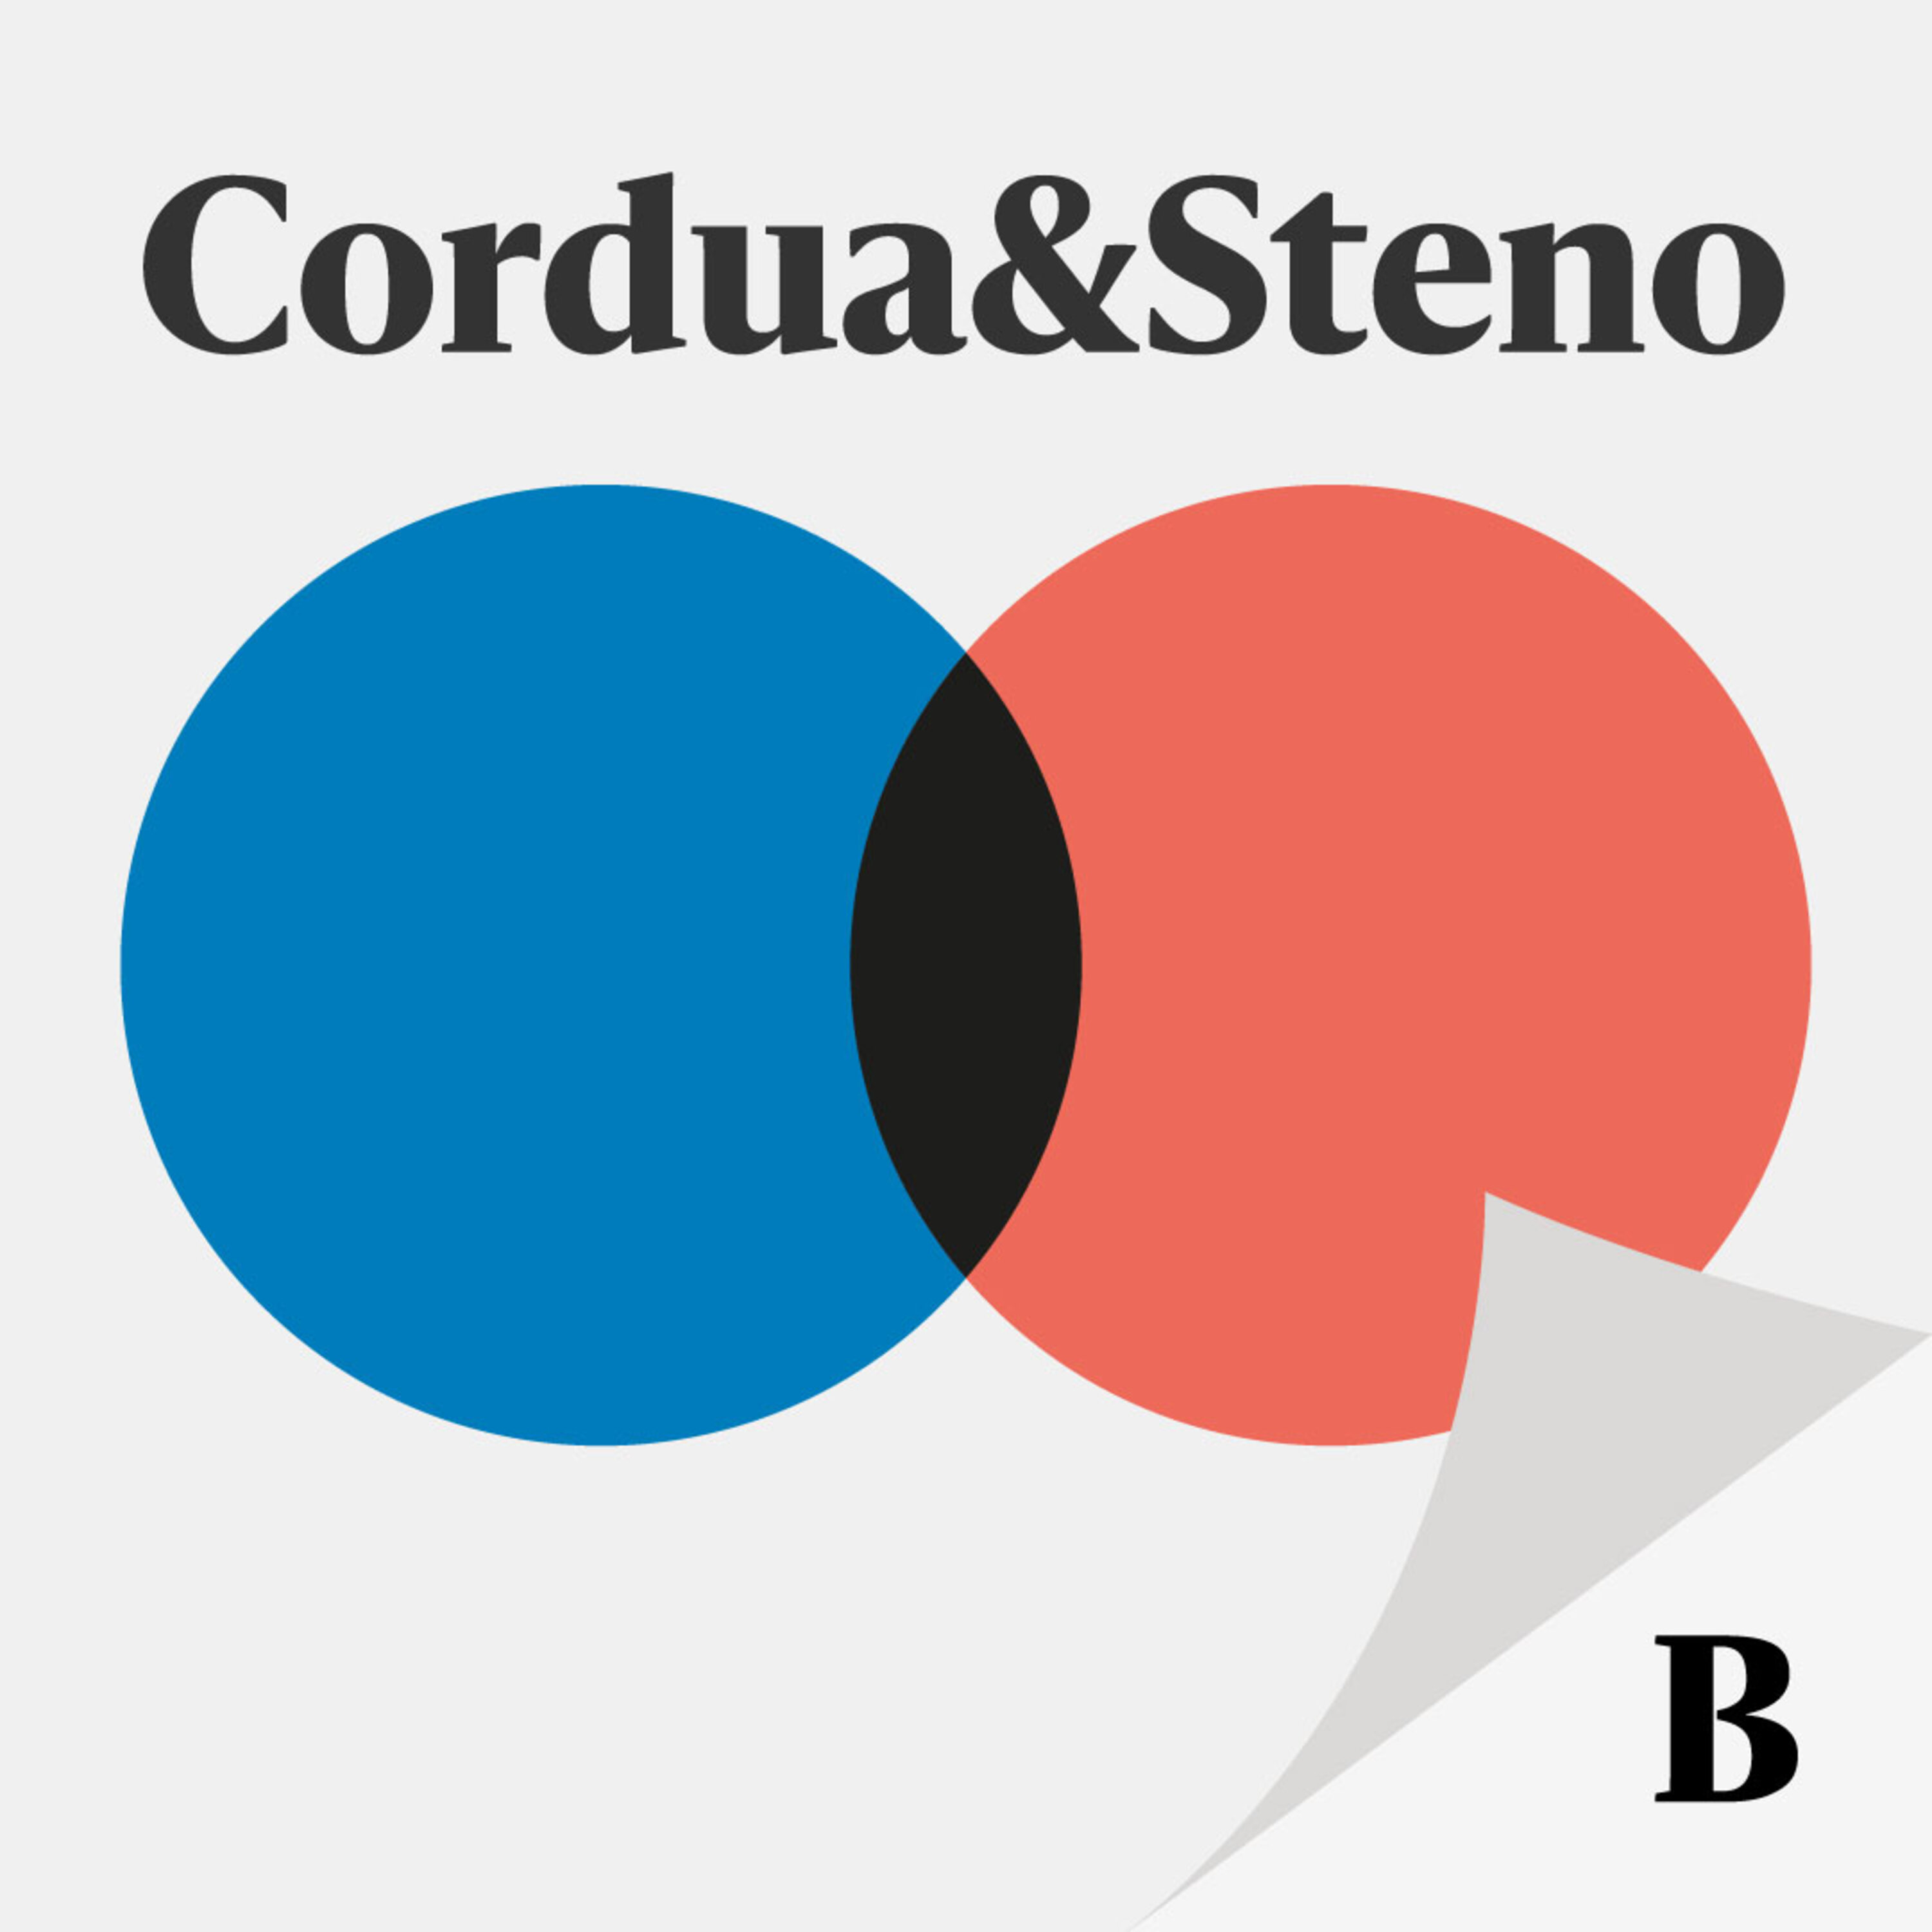 Cordua & Steno - Valgspecial:  Hvorfor bør landbruget slippe for CO2-afgift?